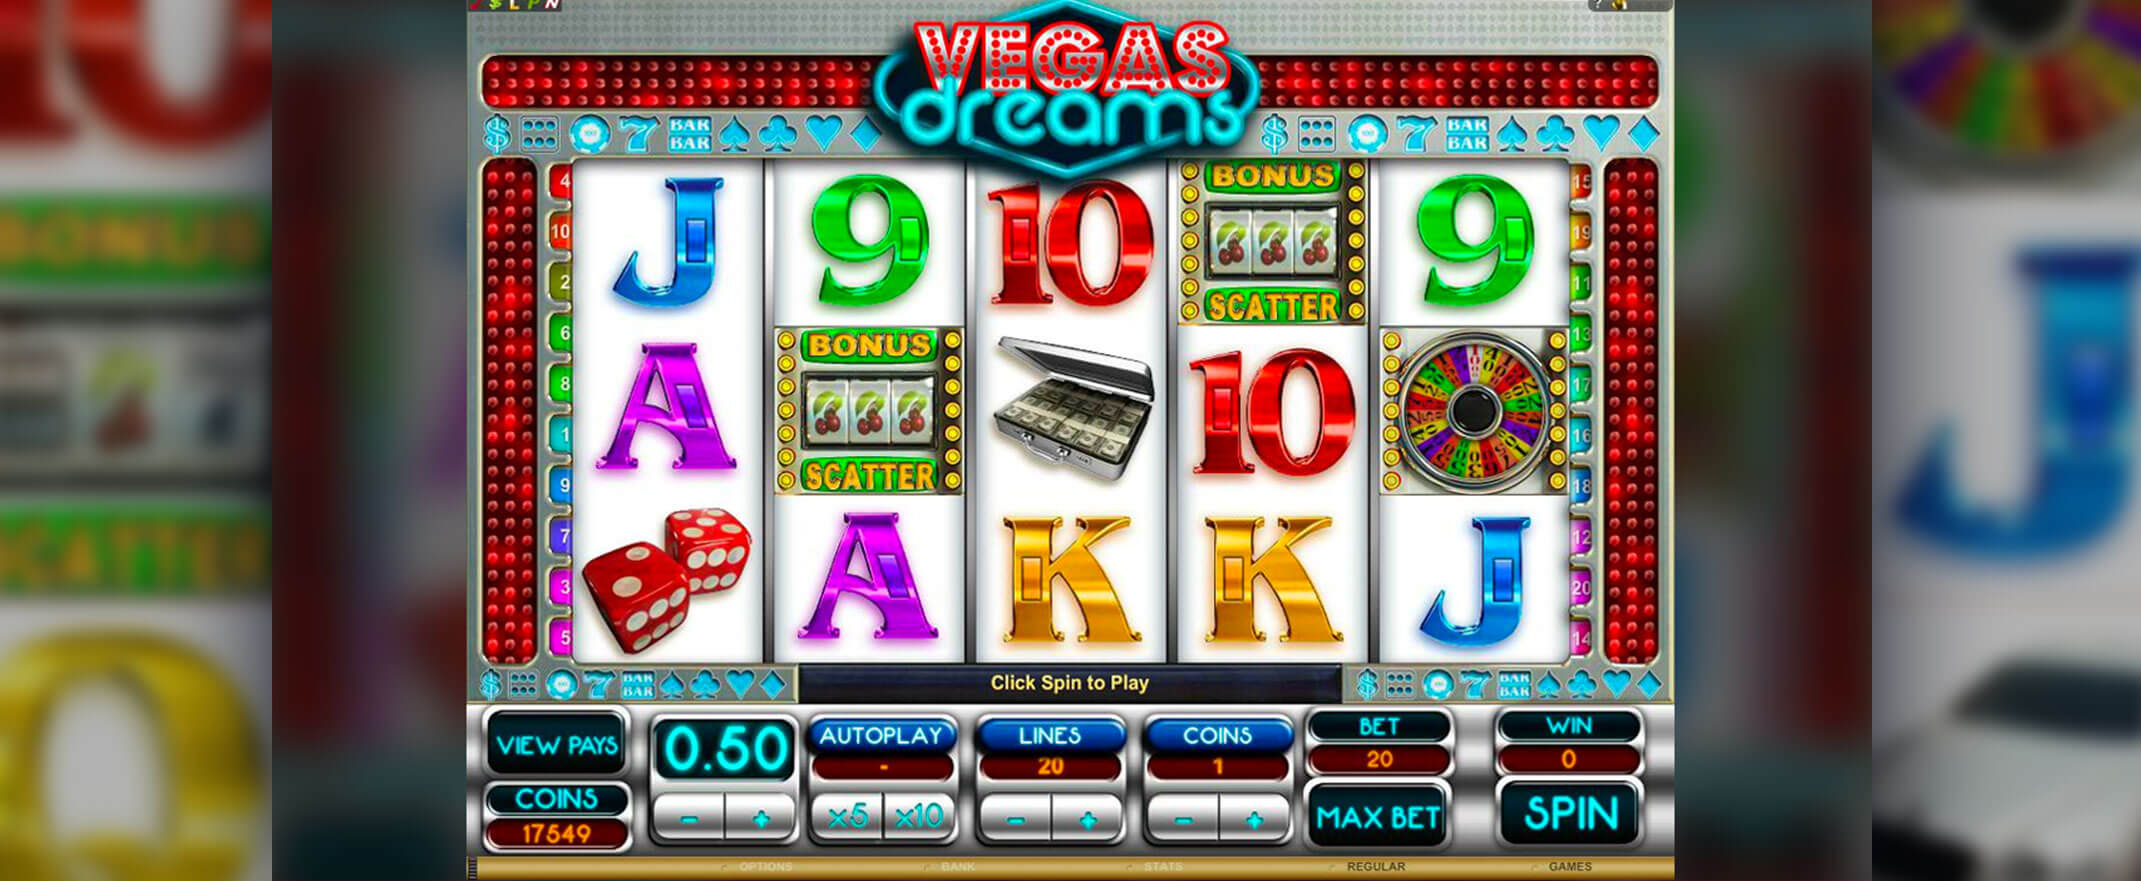 Vegas Dreams Spielautomaten Bewertung